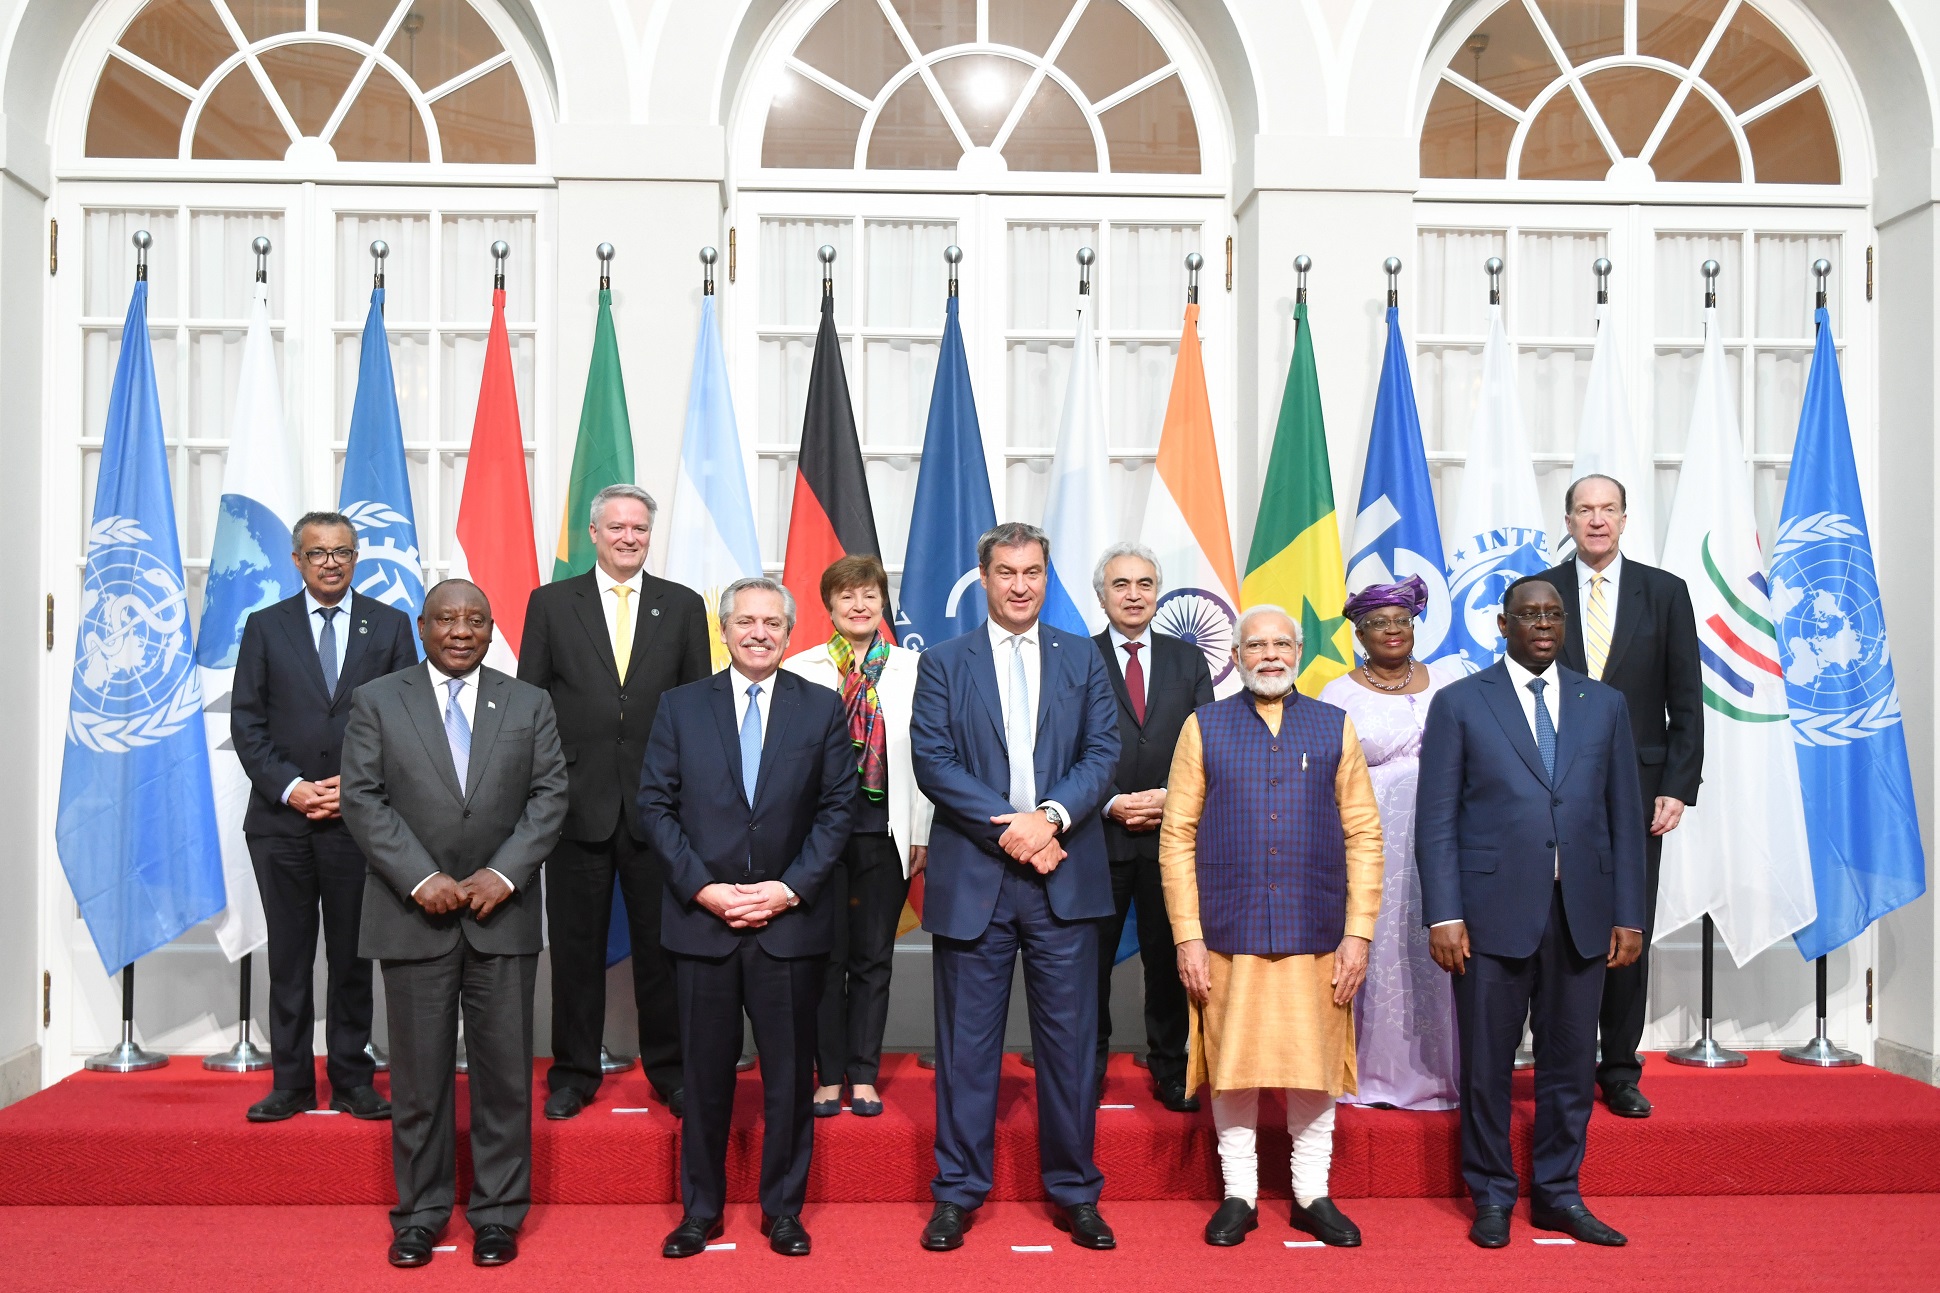 El presidente finalizó su participación en la Cumbre del G7